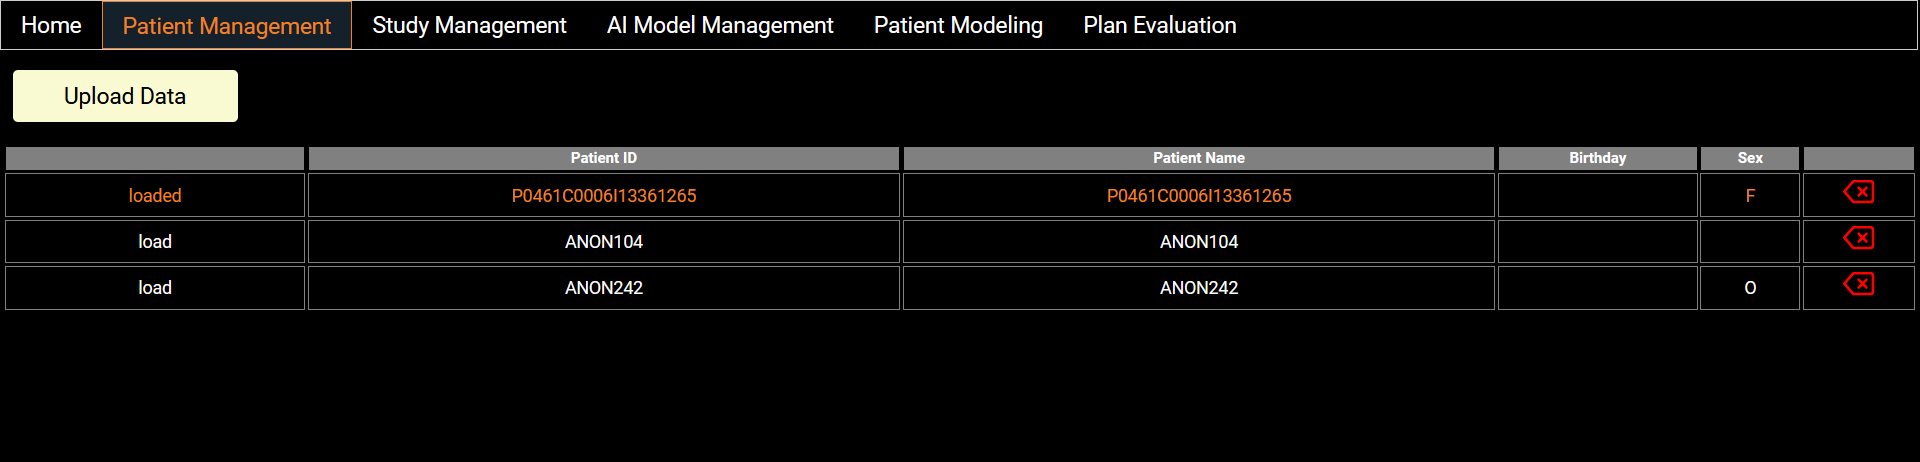 Patient Management Image